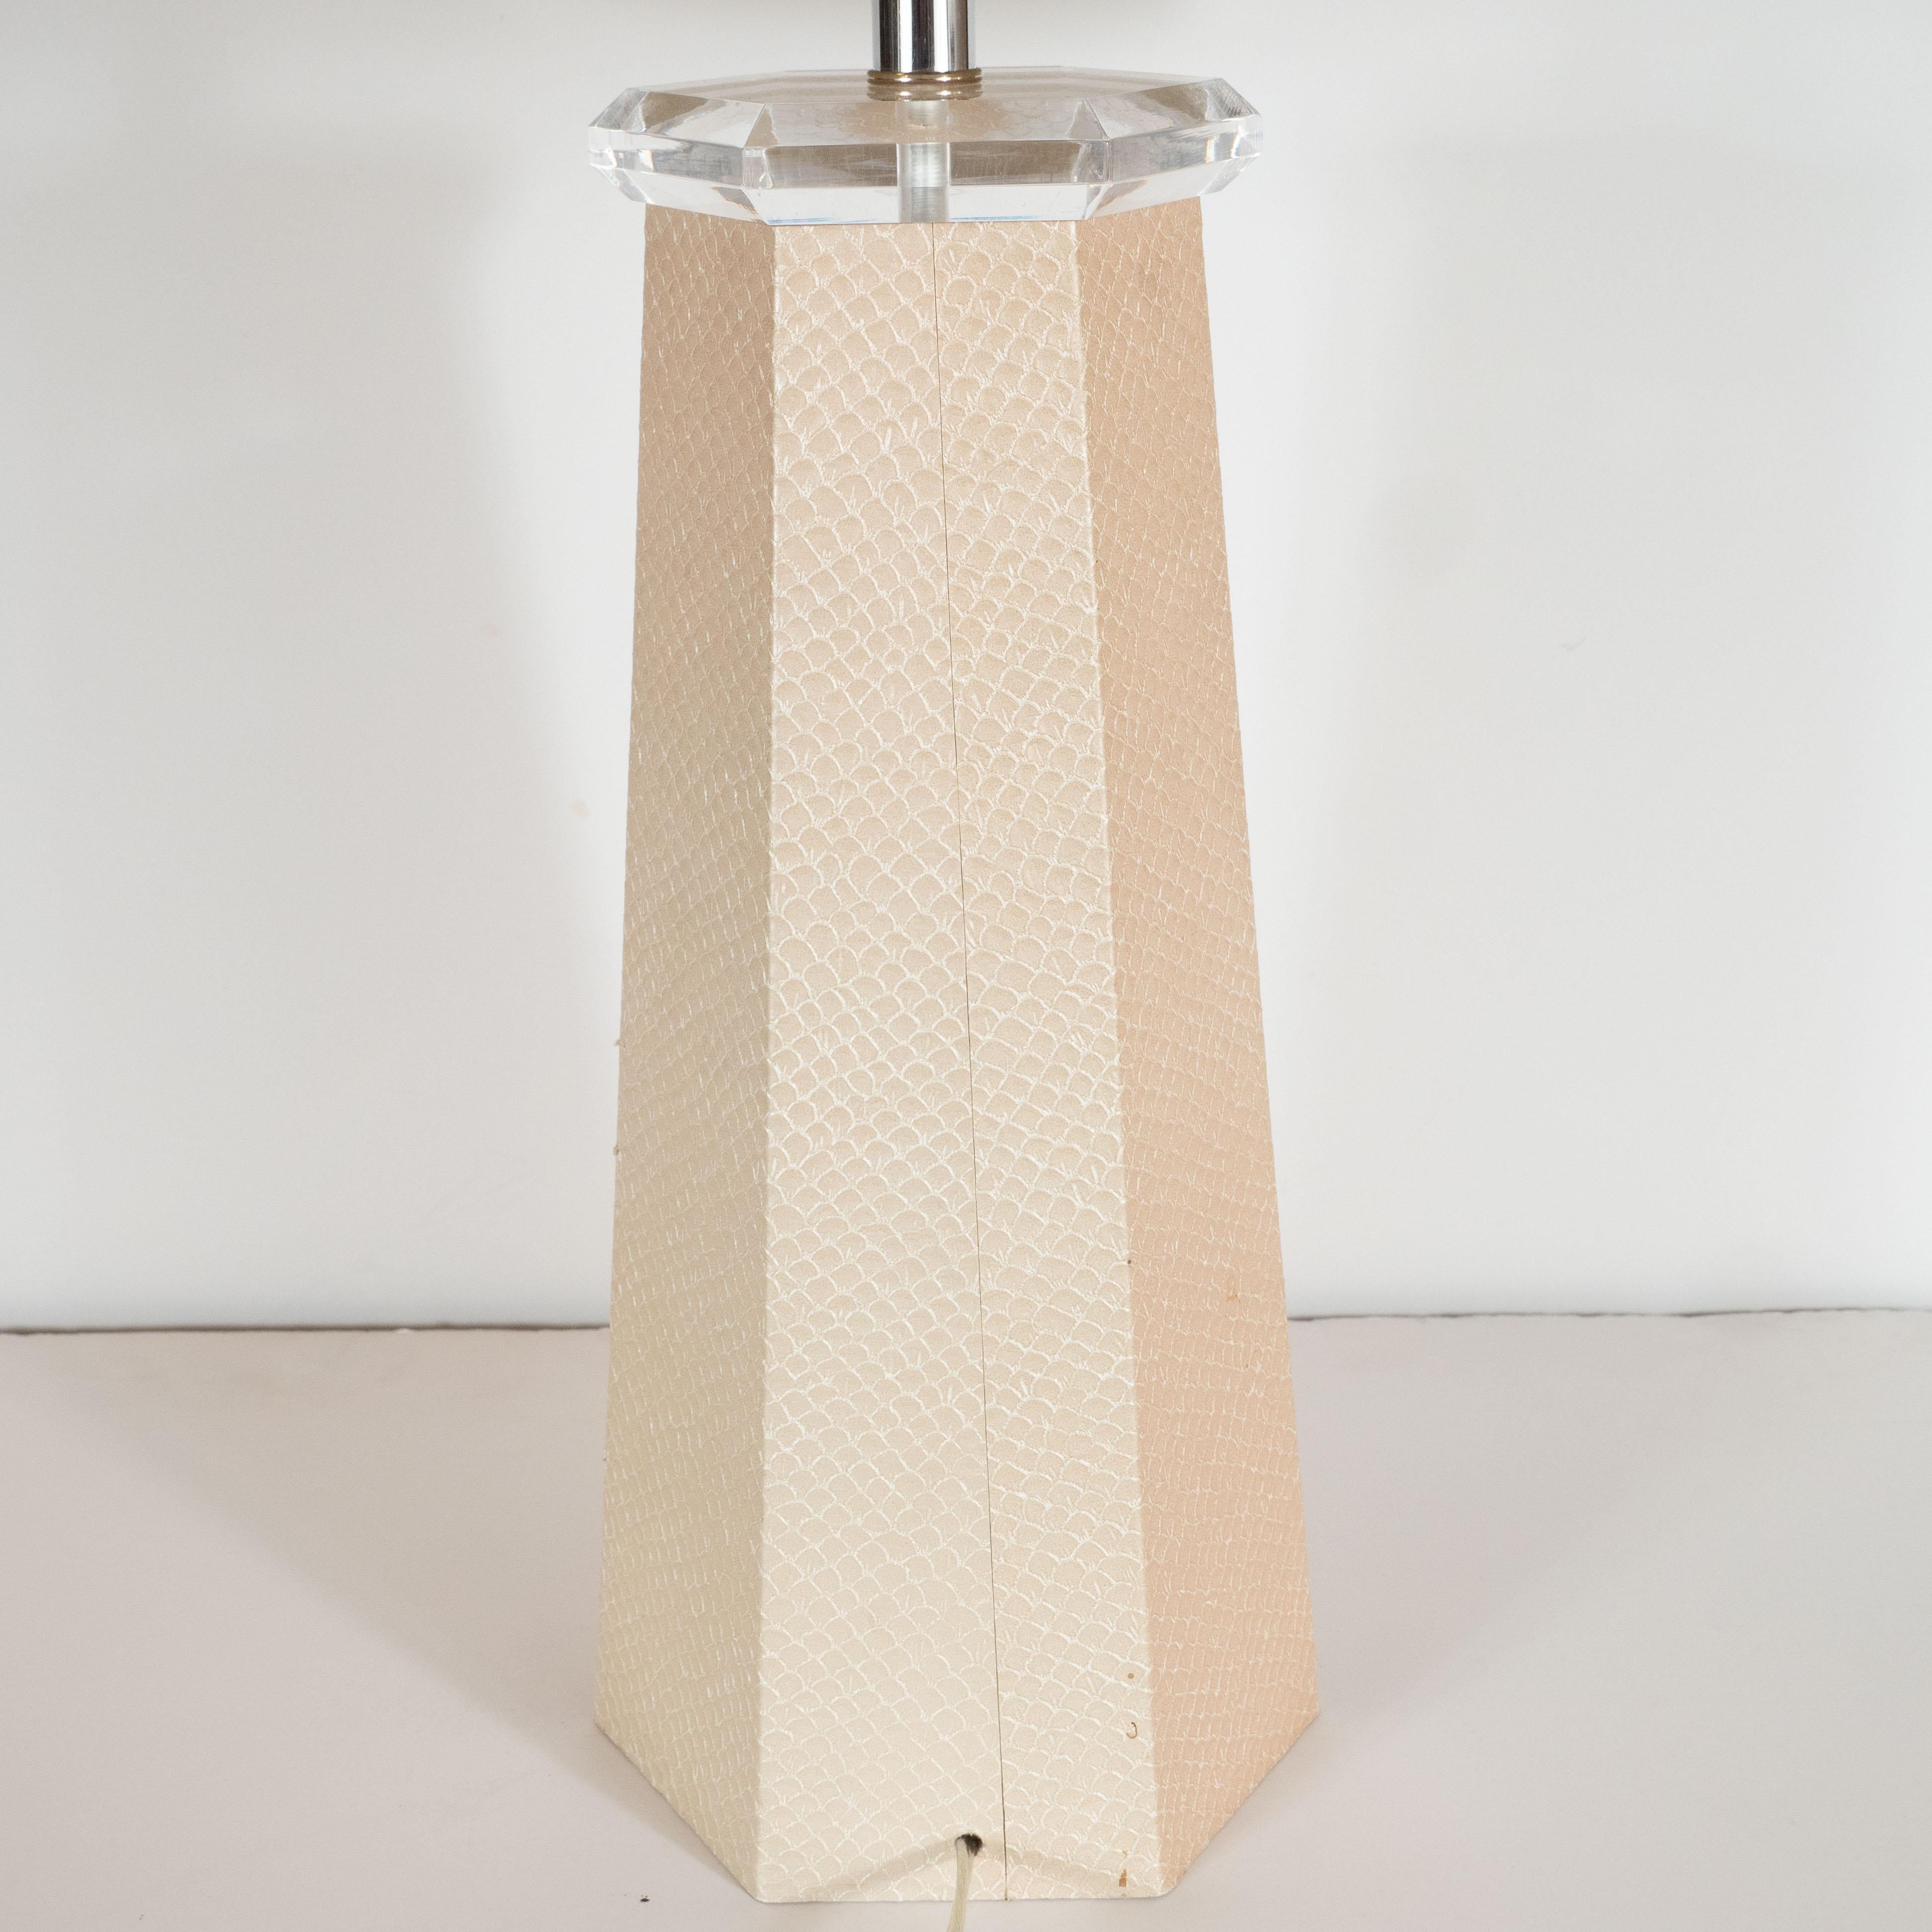 Signed Modernist Karl Springer Hexagonal Table Lamp in Buff-Colored Snakeskin 1